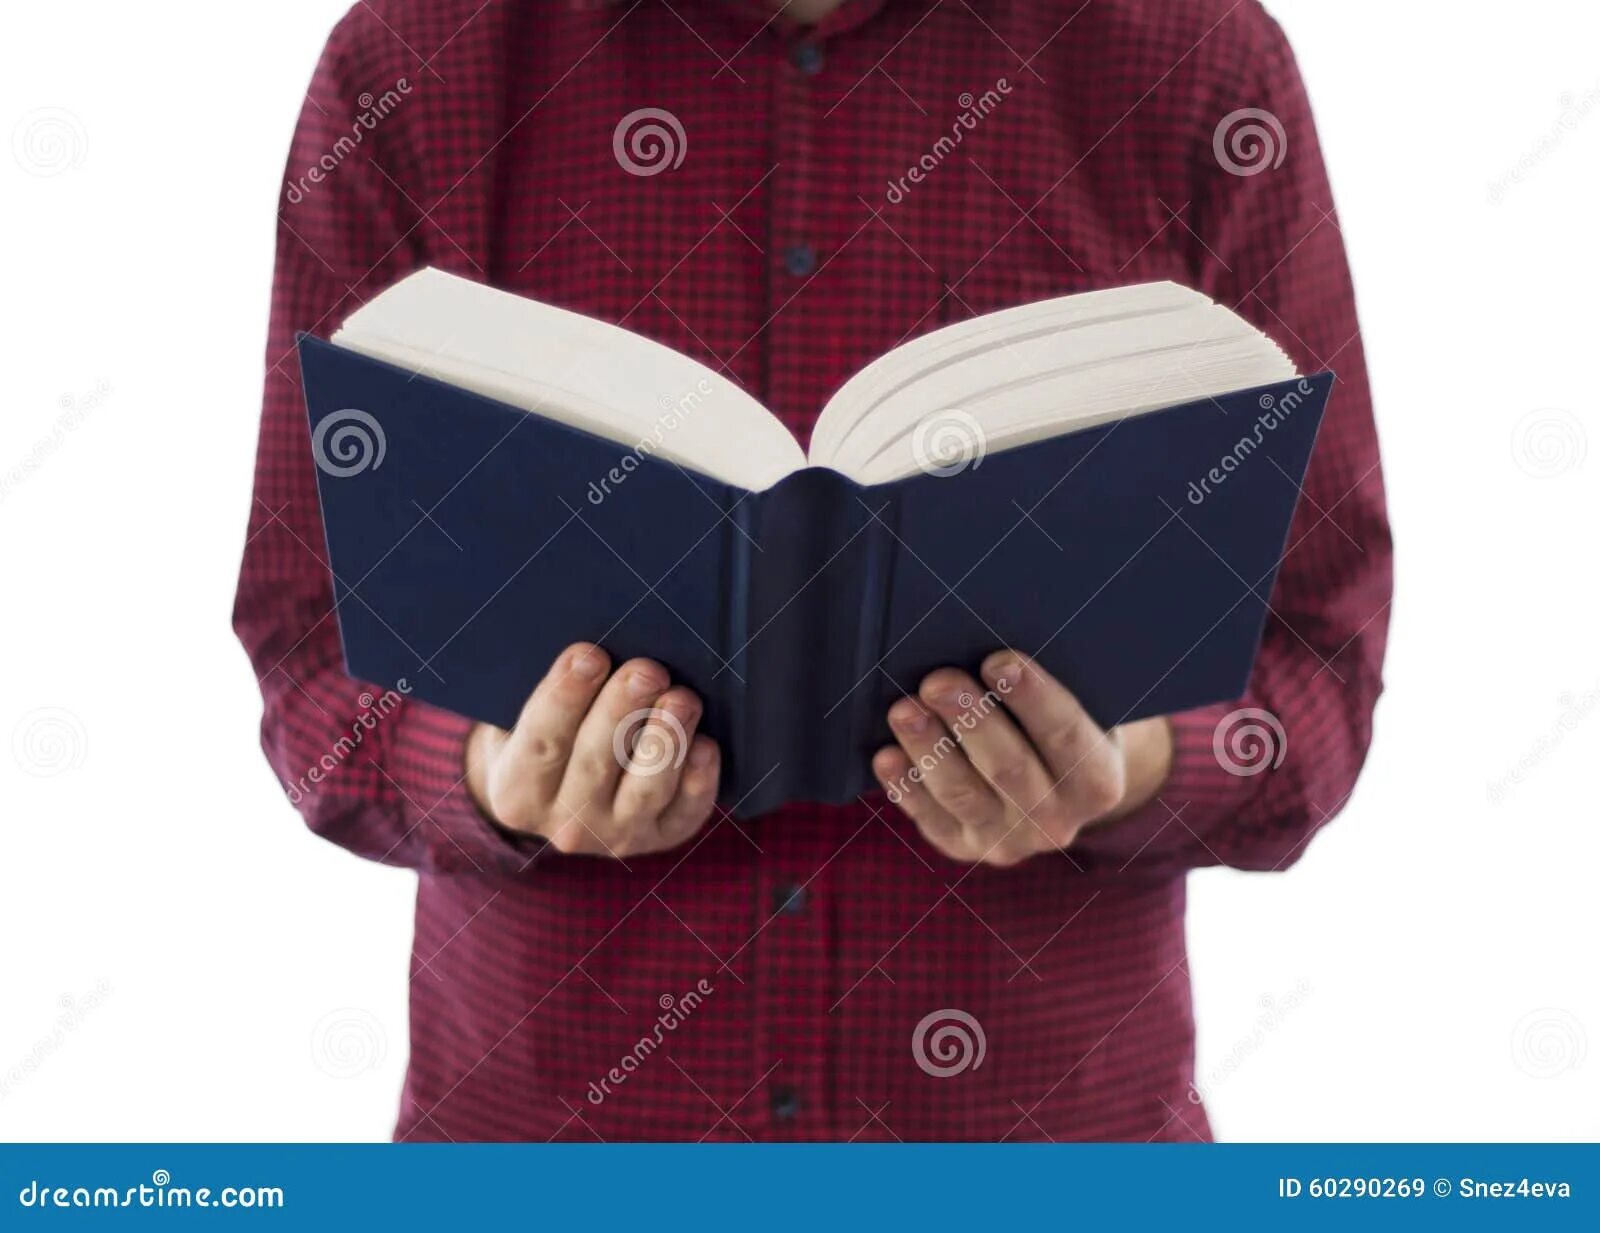 Держать открытую книгу. Человек держит открытую книгу. Человек держит раскрытую книгу. Человек с раскрытой книгой в руках. Человек с открытой книгой.